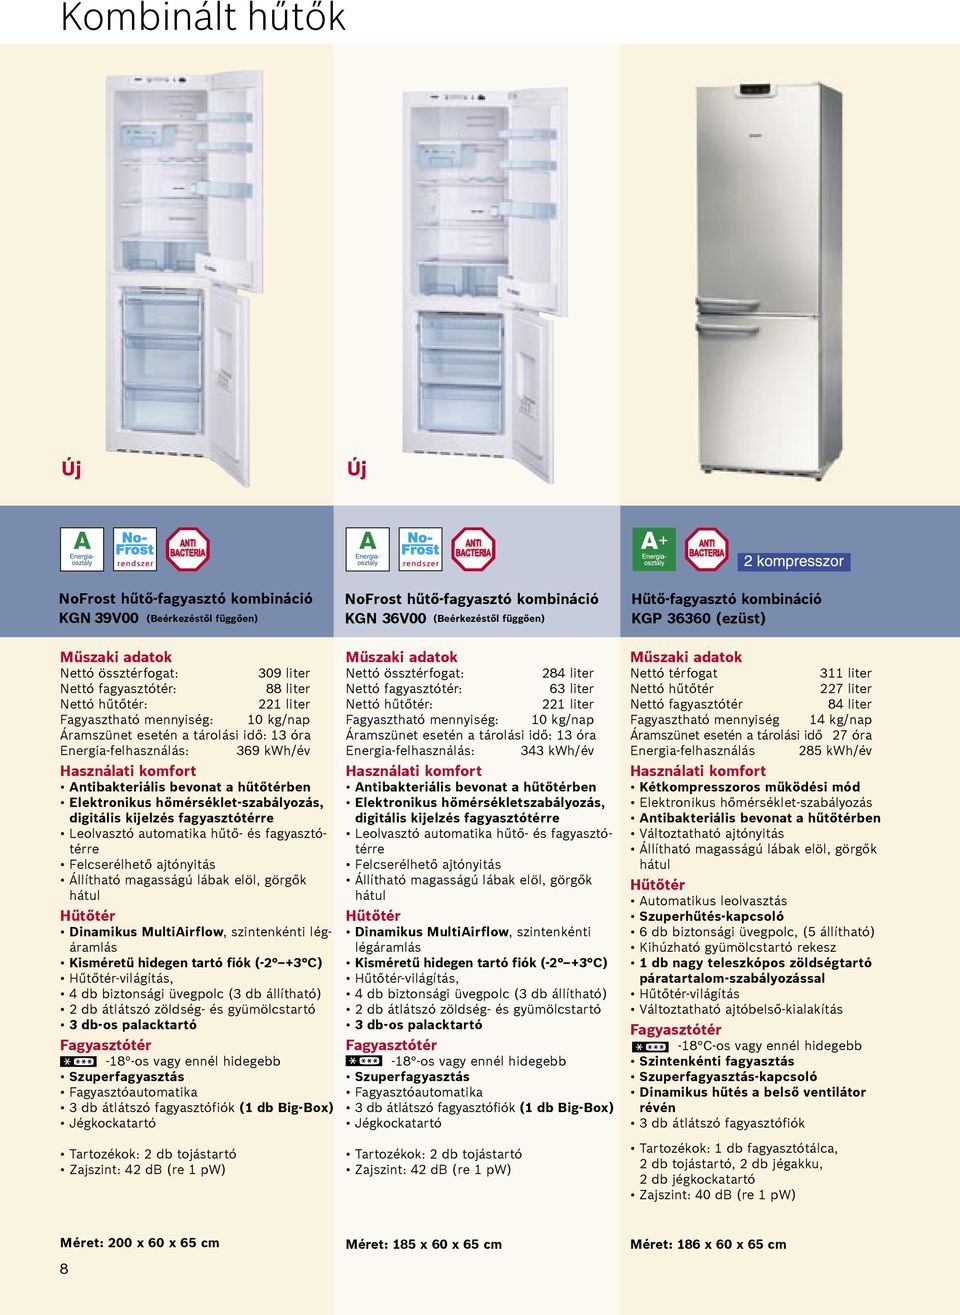 Antibakteriális bevonat a hűtőtérben Elektronikus hőmérséklet-szabályozás, digitális kijelzés fagyasztótérre Leolvasztó automatika hűtő- és fagyasztótérre Felcserélhető ajtónyitás Állítható magasságú